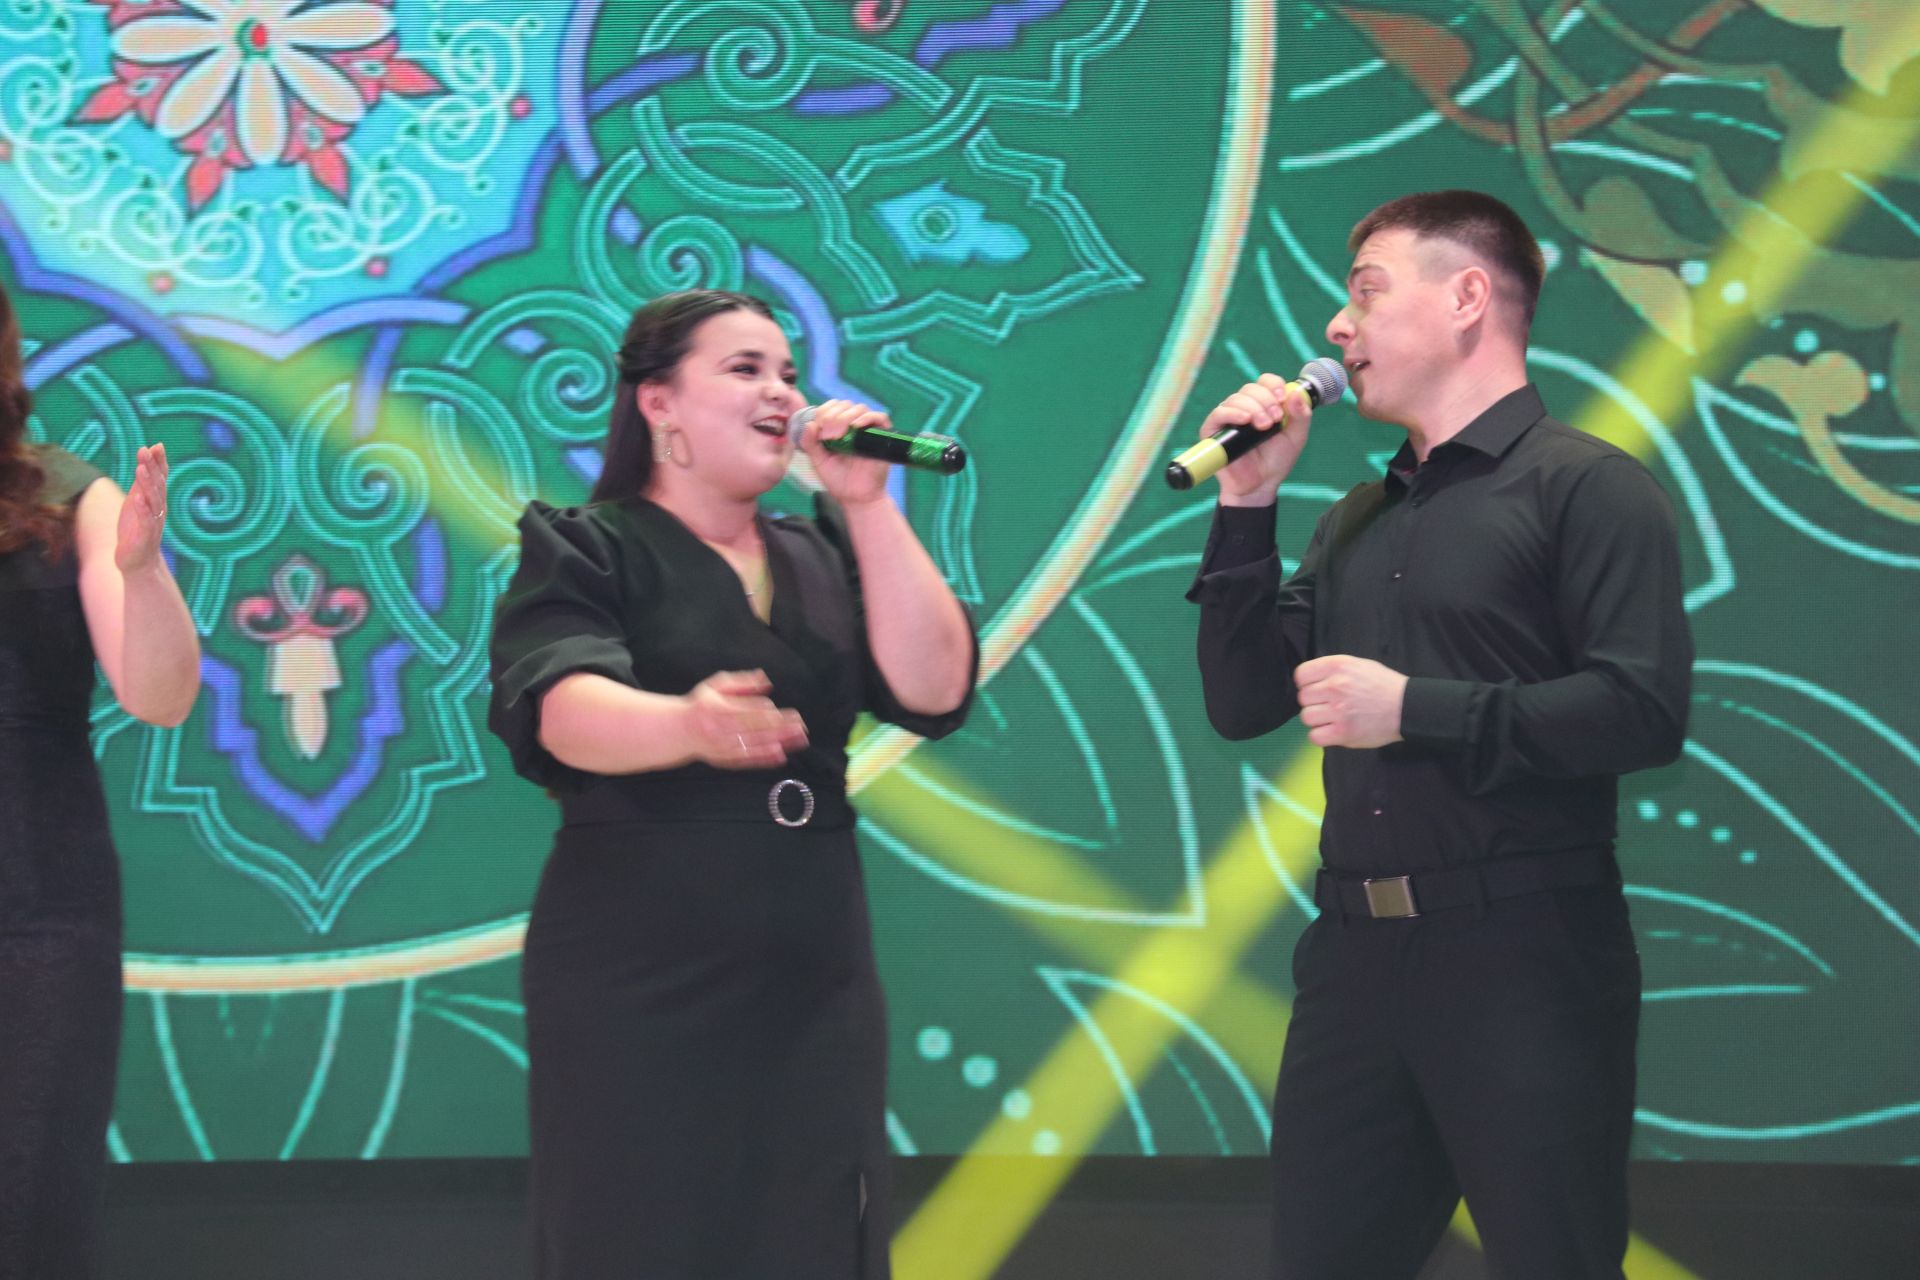 Открытие года Семьи на концерте в РДК